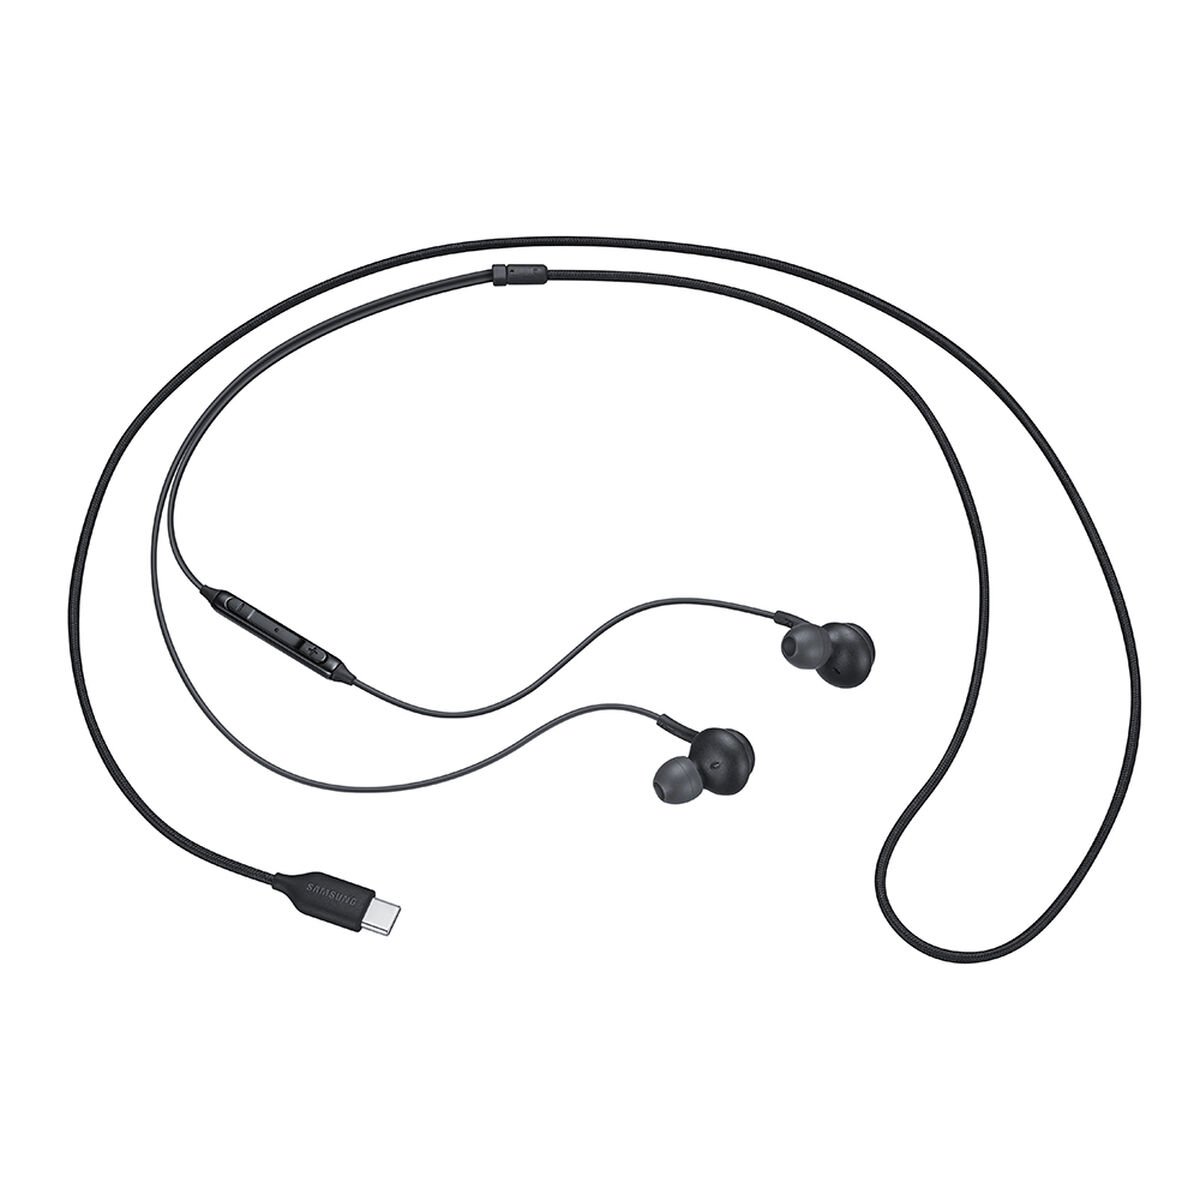 Audífonos In Ear Samsung Tipo-C Negros